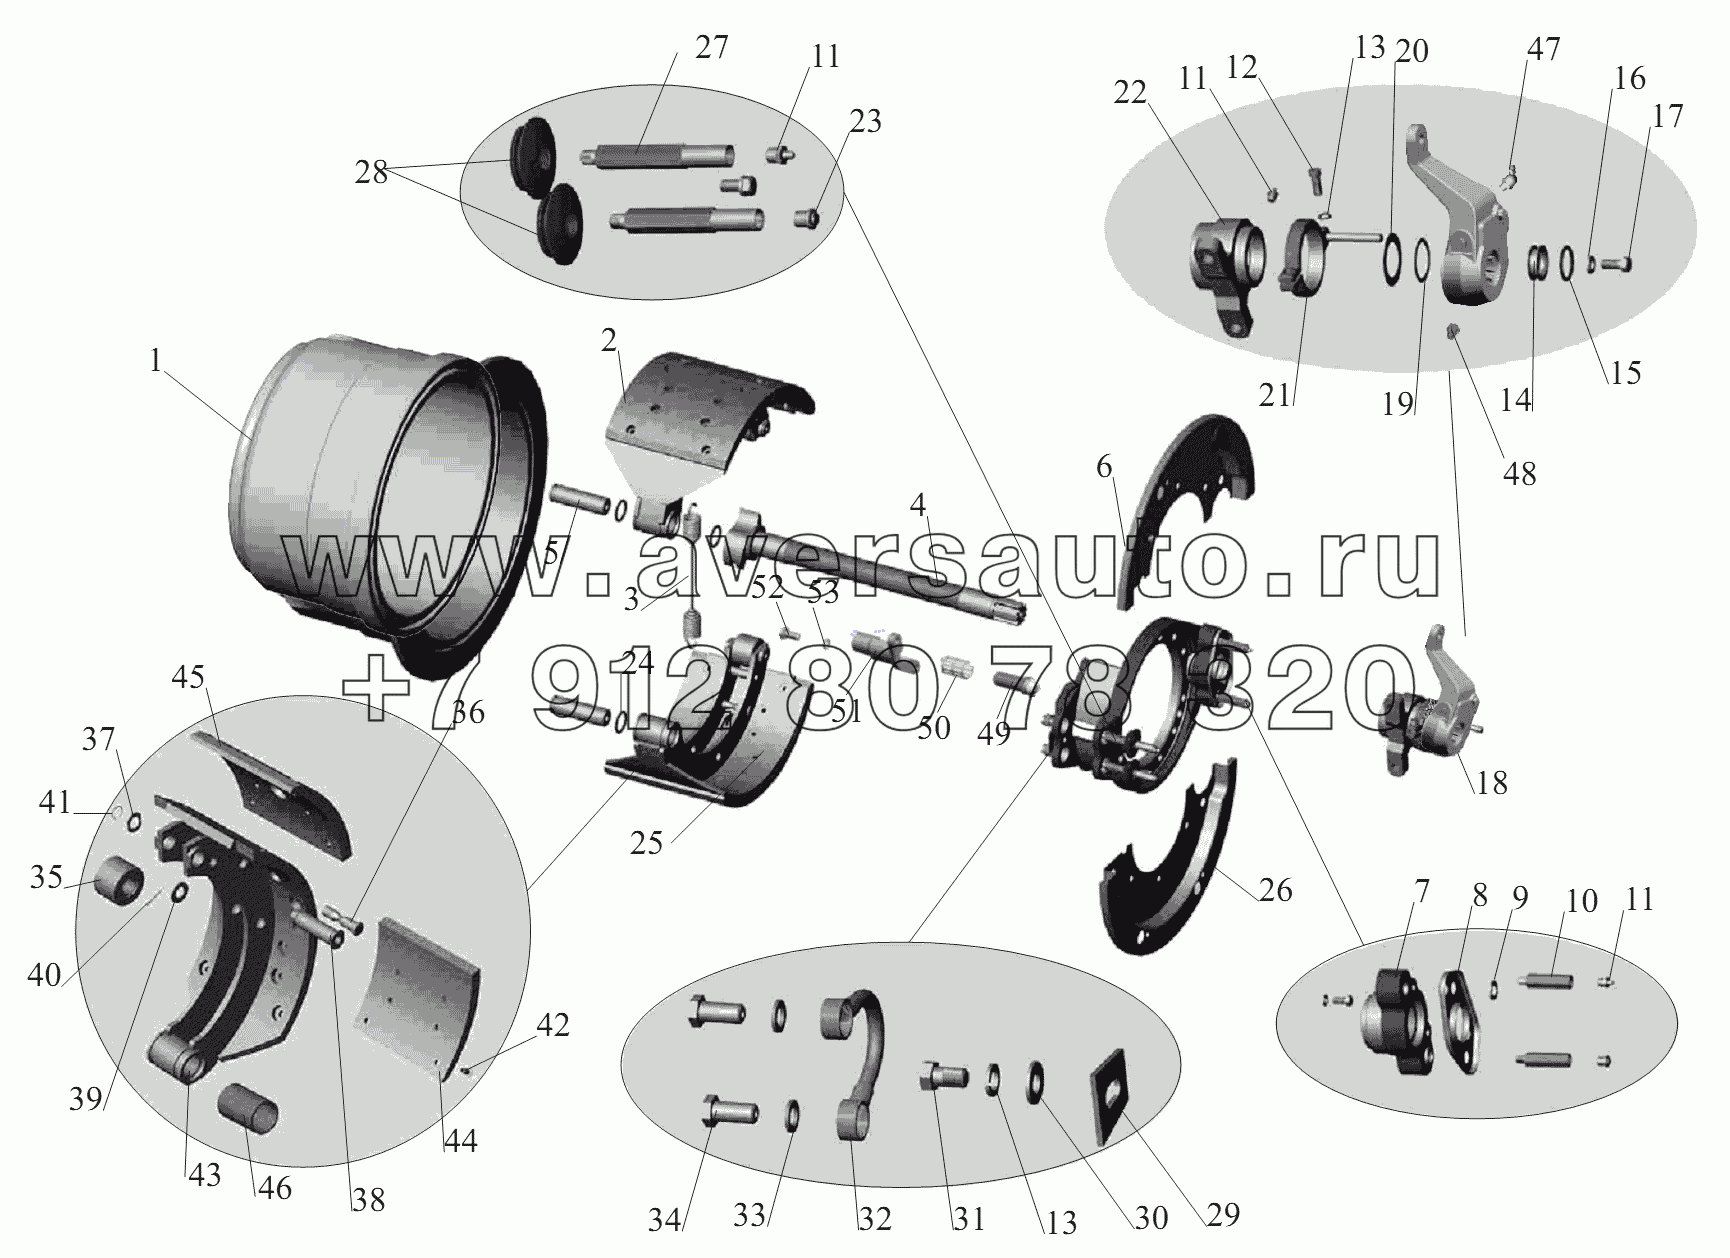 Тормозной механизм задних колес и средних колес (для барабана диаметром 410мм, с шириной накладок 220мм)